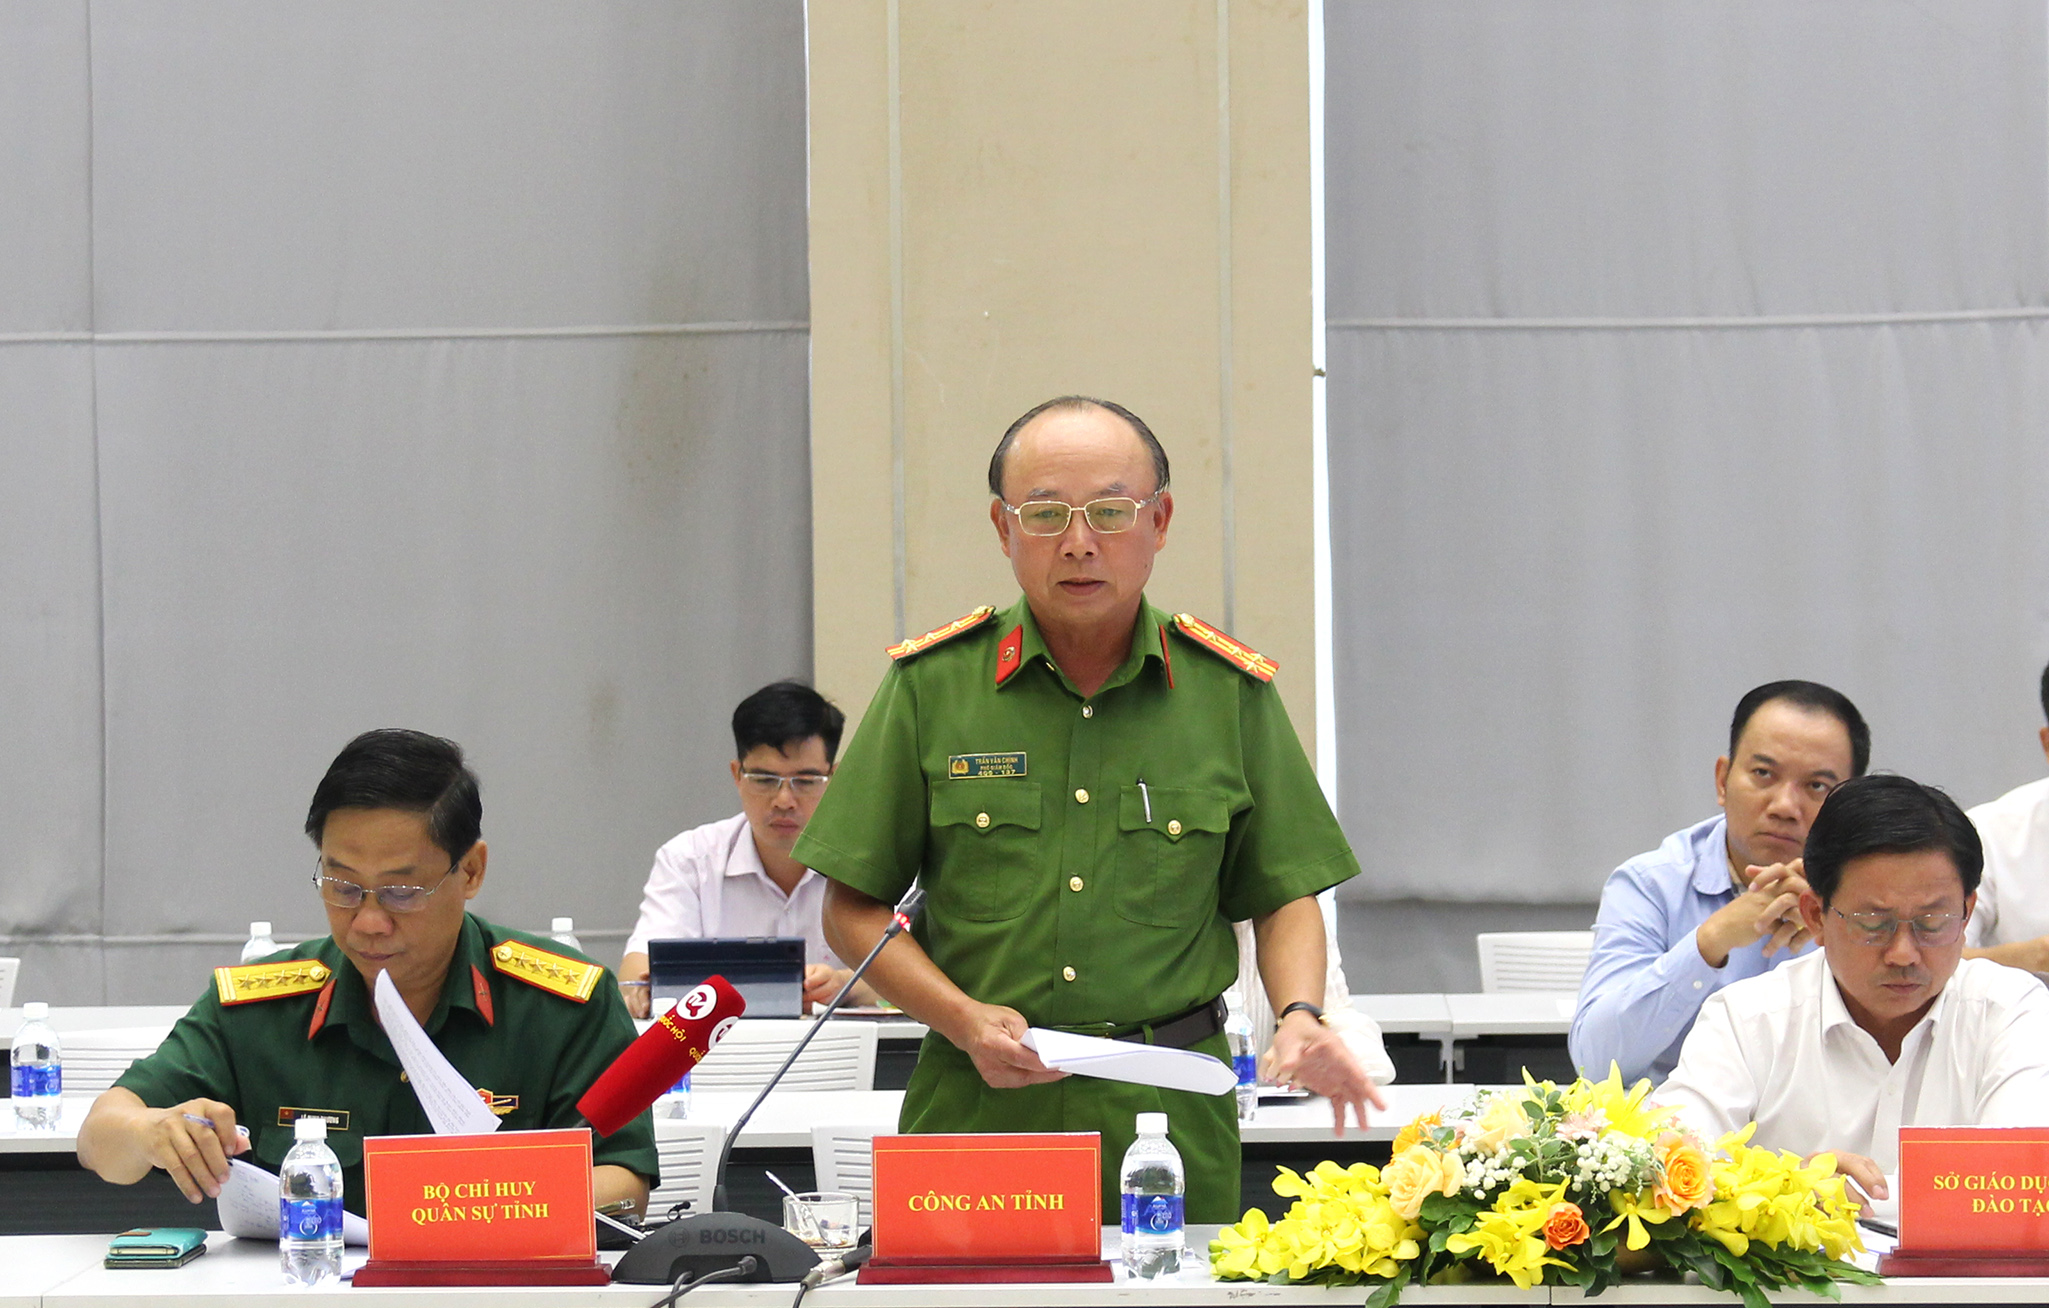 Đồng chí Trần Văn Chính - Phó Giám đốc Công an tỉnh chia sẻ về tình hình an ninh, trật tự trên địa tỉnh Bình Dương trong tháng 10 (Ảnh: HH)